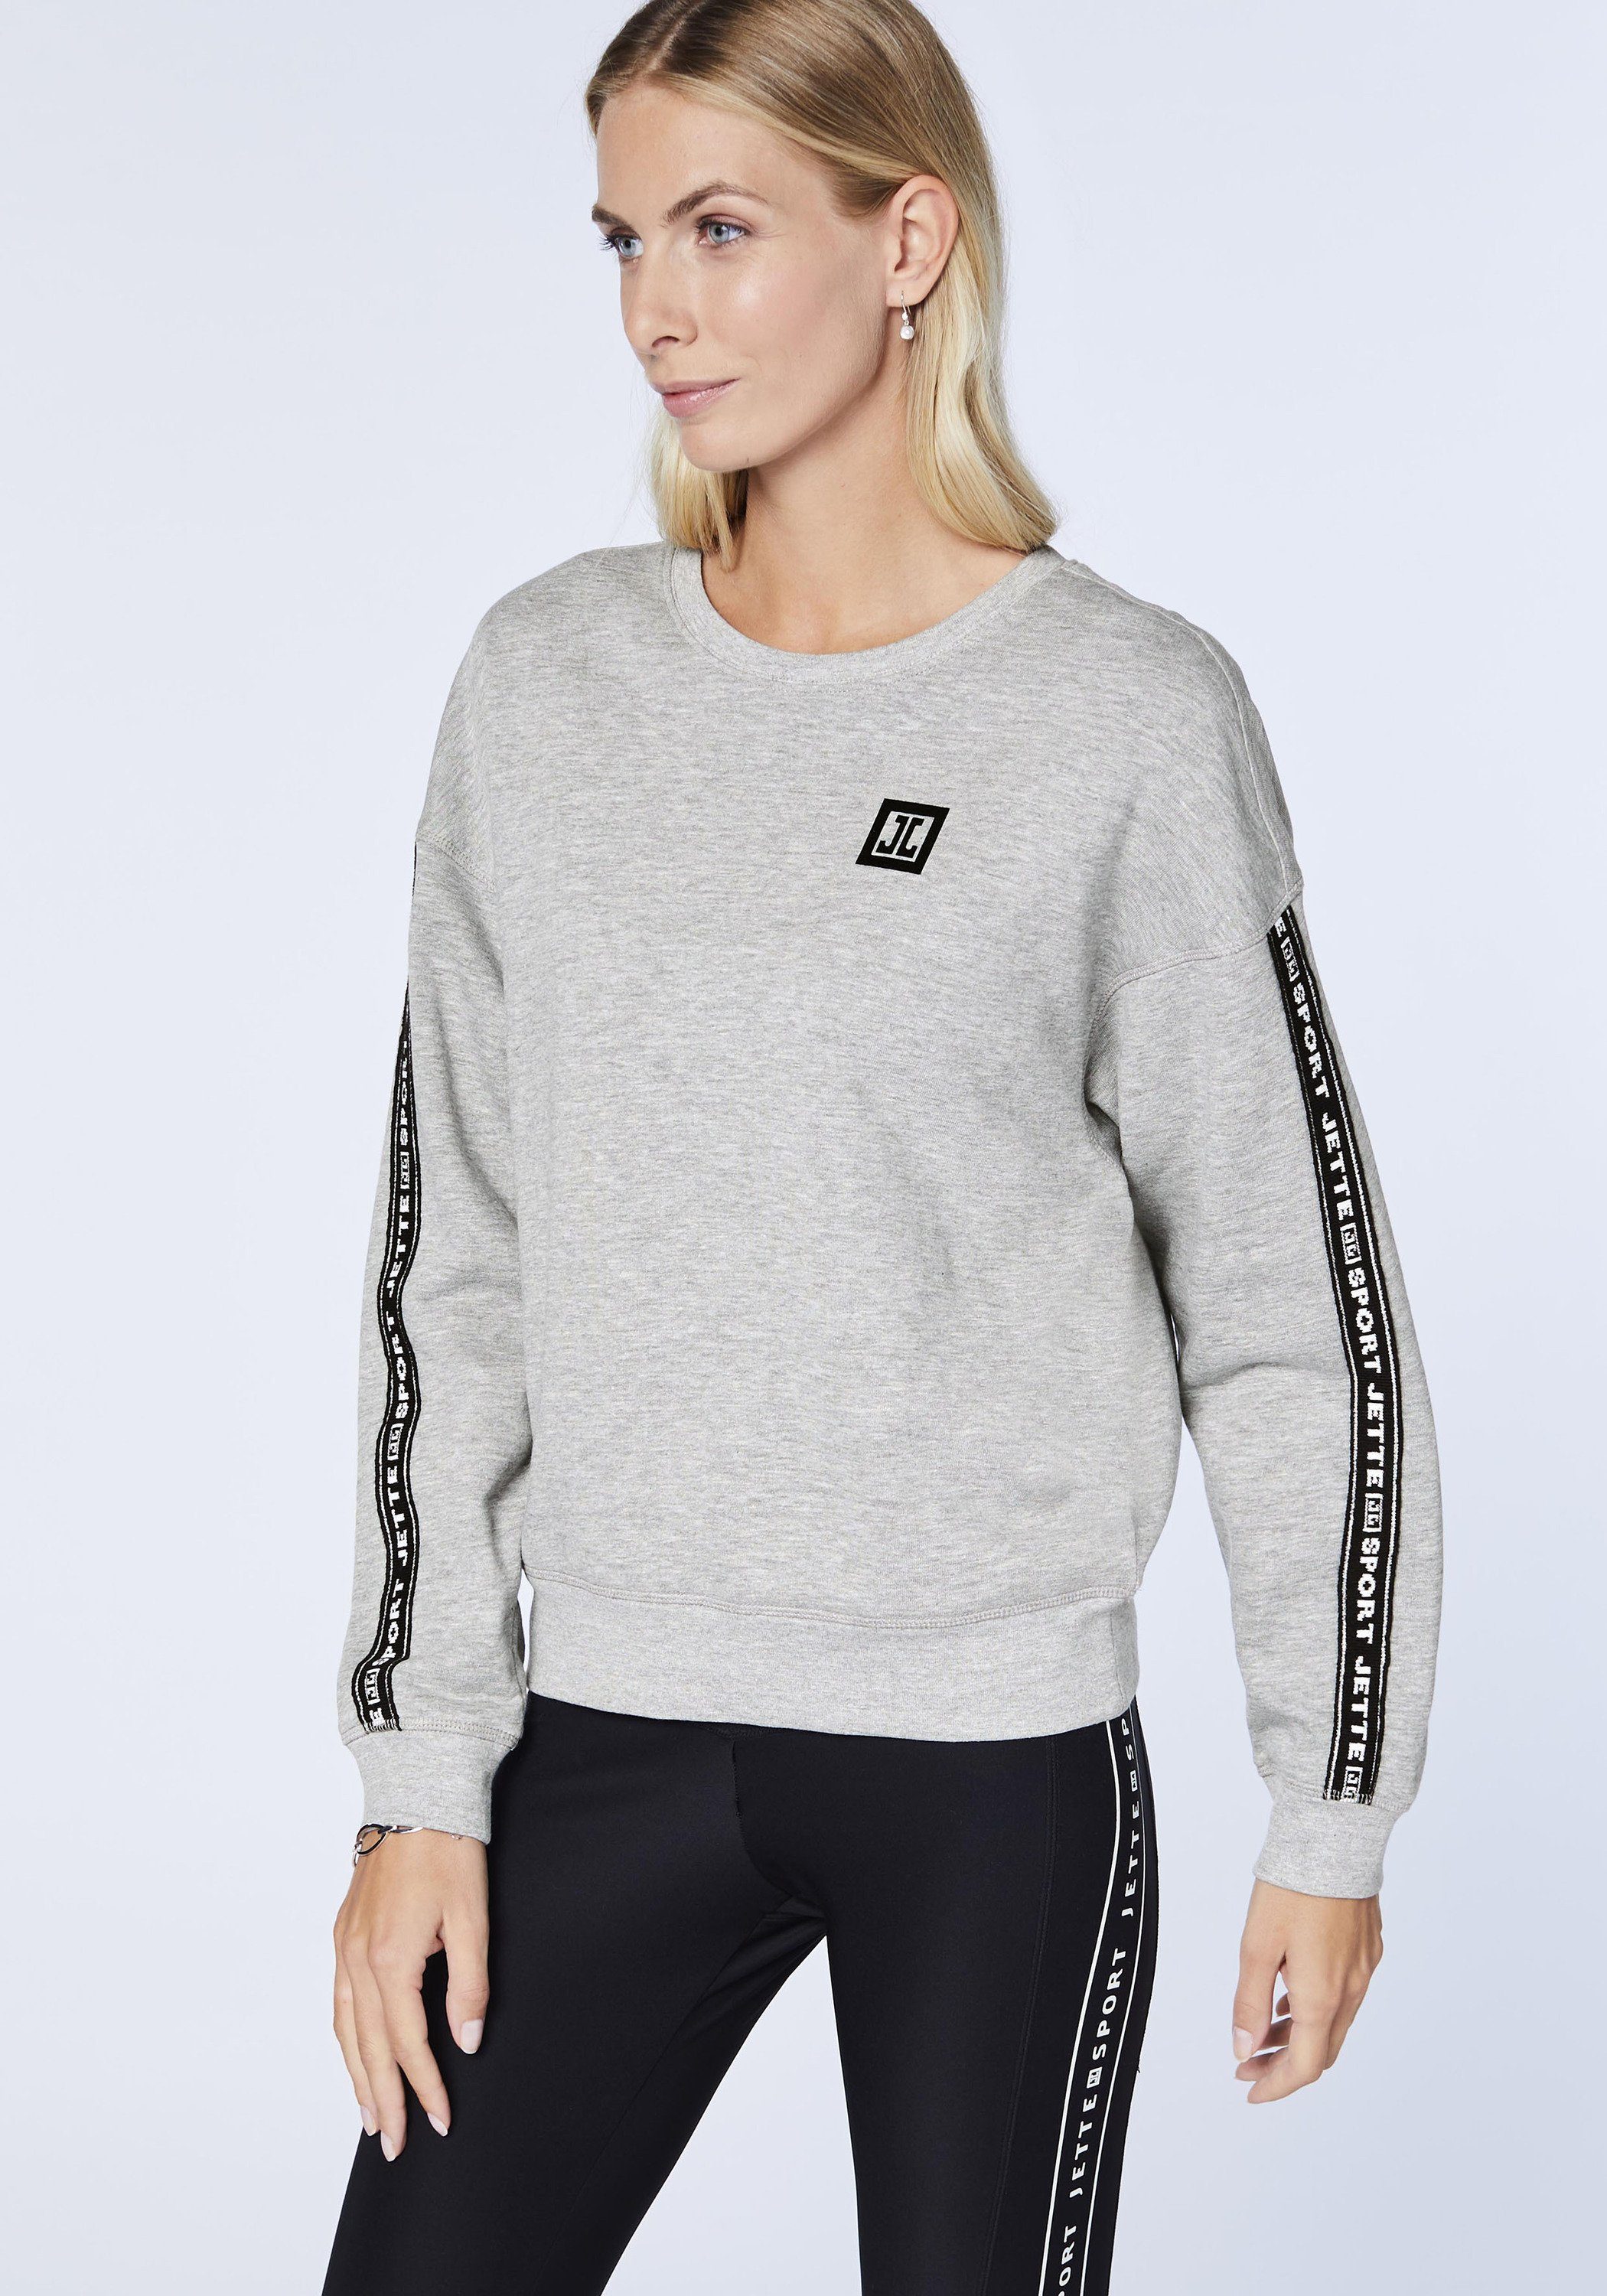 JETTE SPORT Gray 17-4402M Sweatshirt Melange Neutral im Label-Design